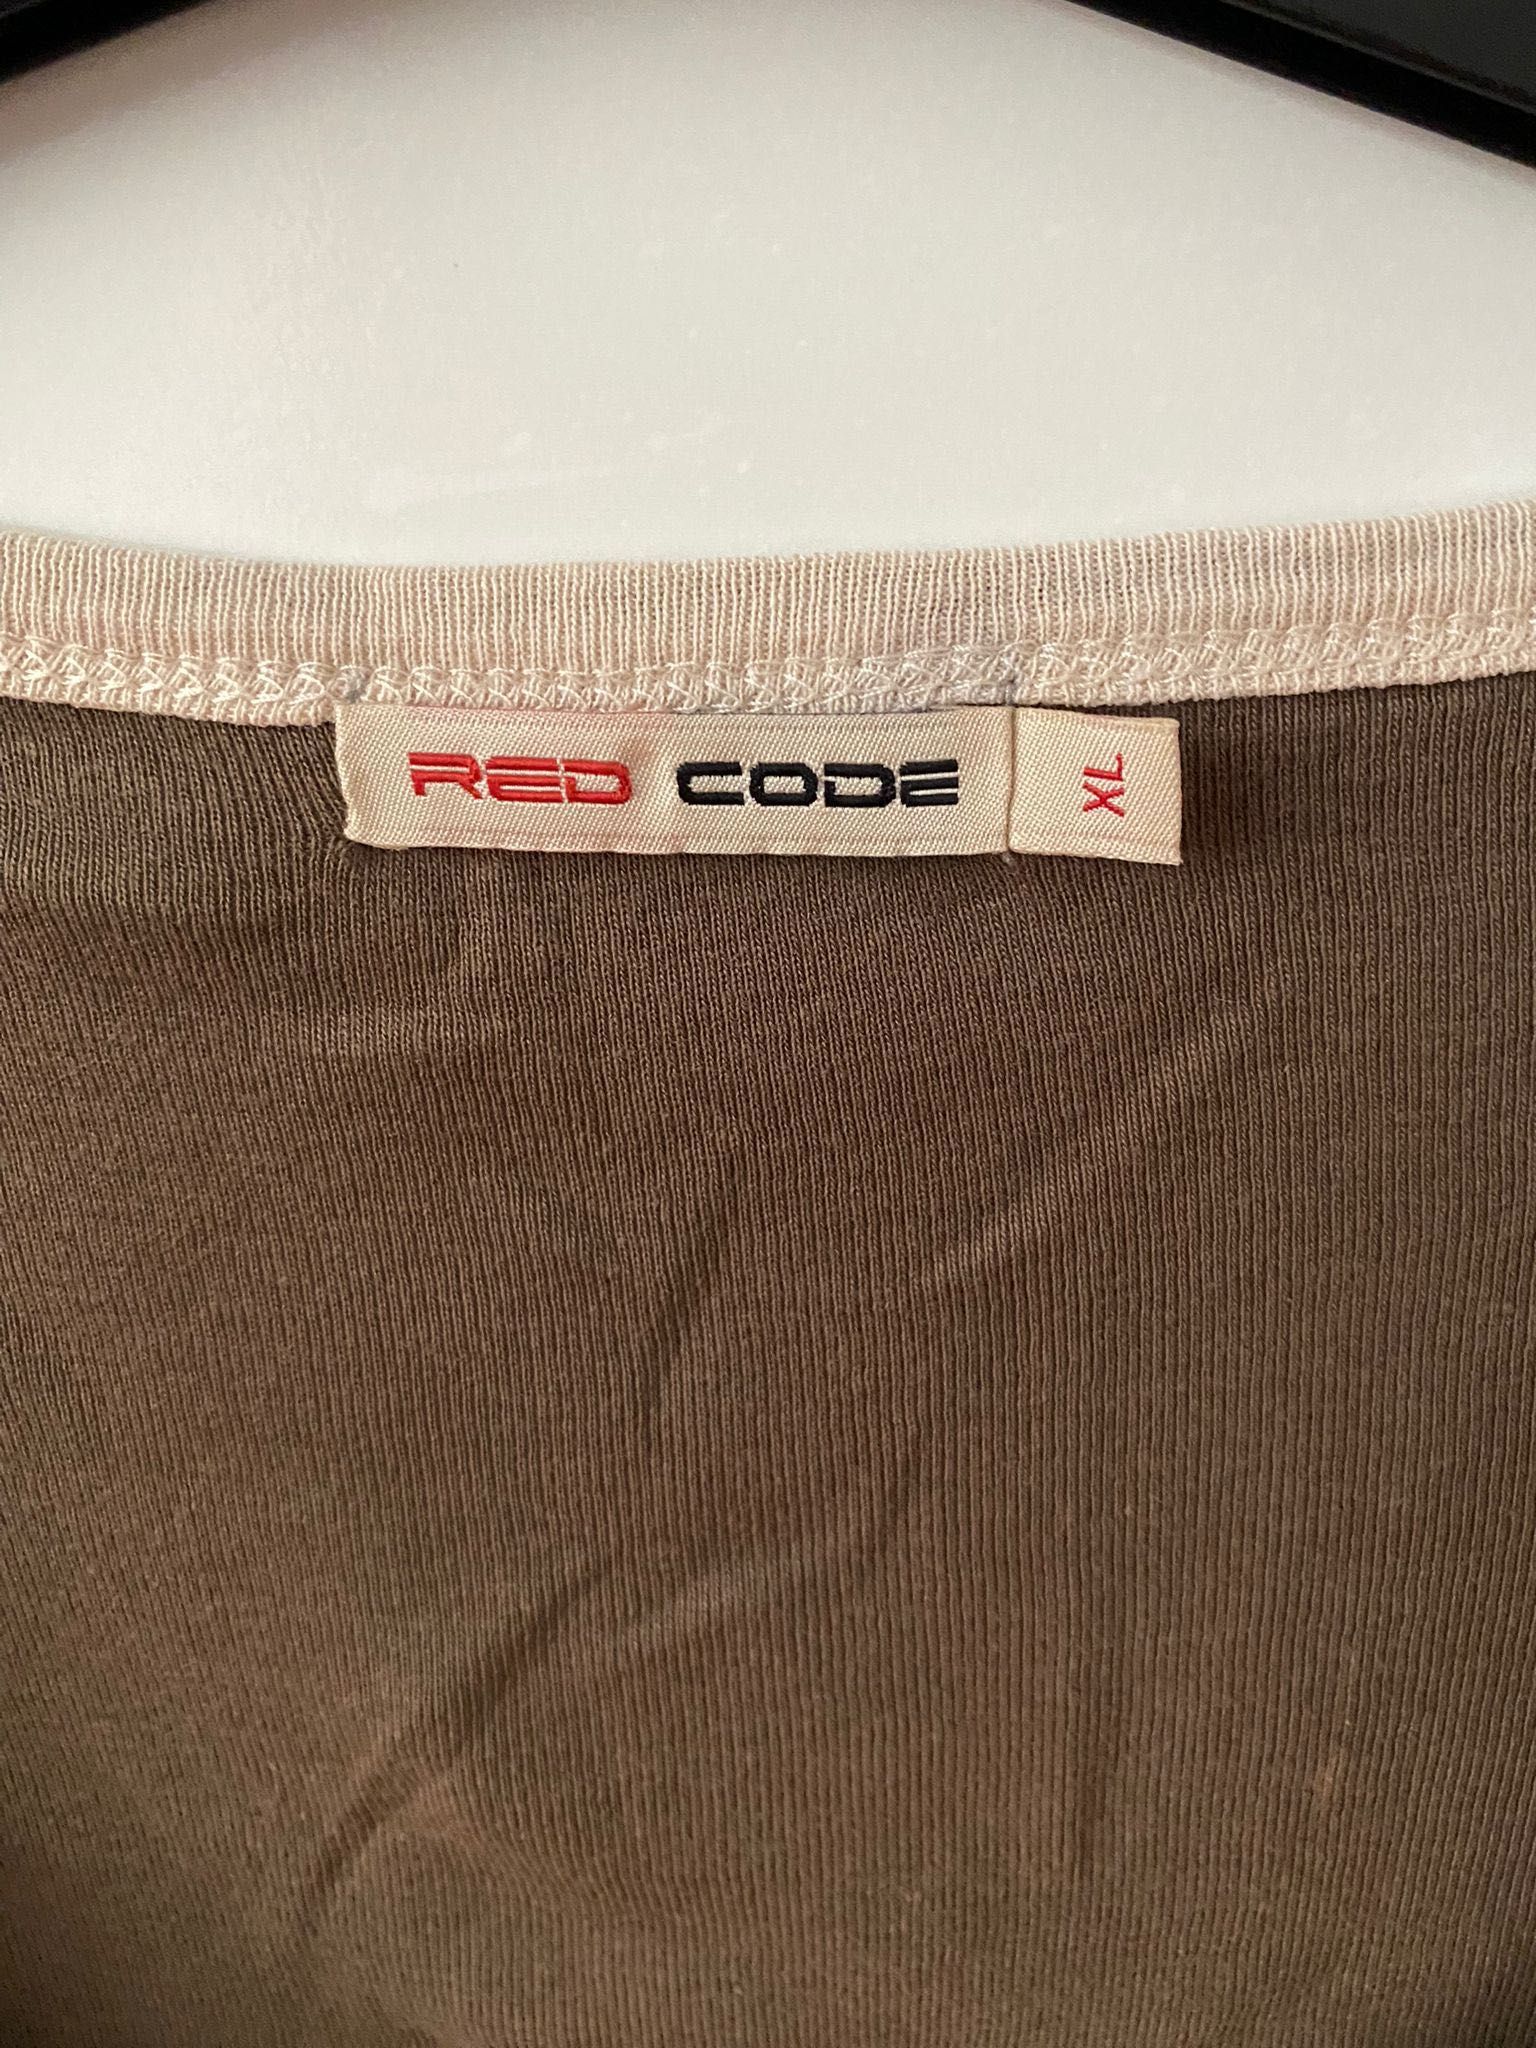 Tshirt castanha da Red Code